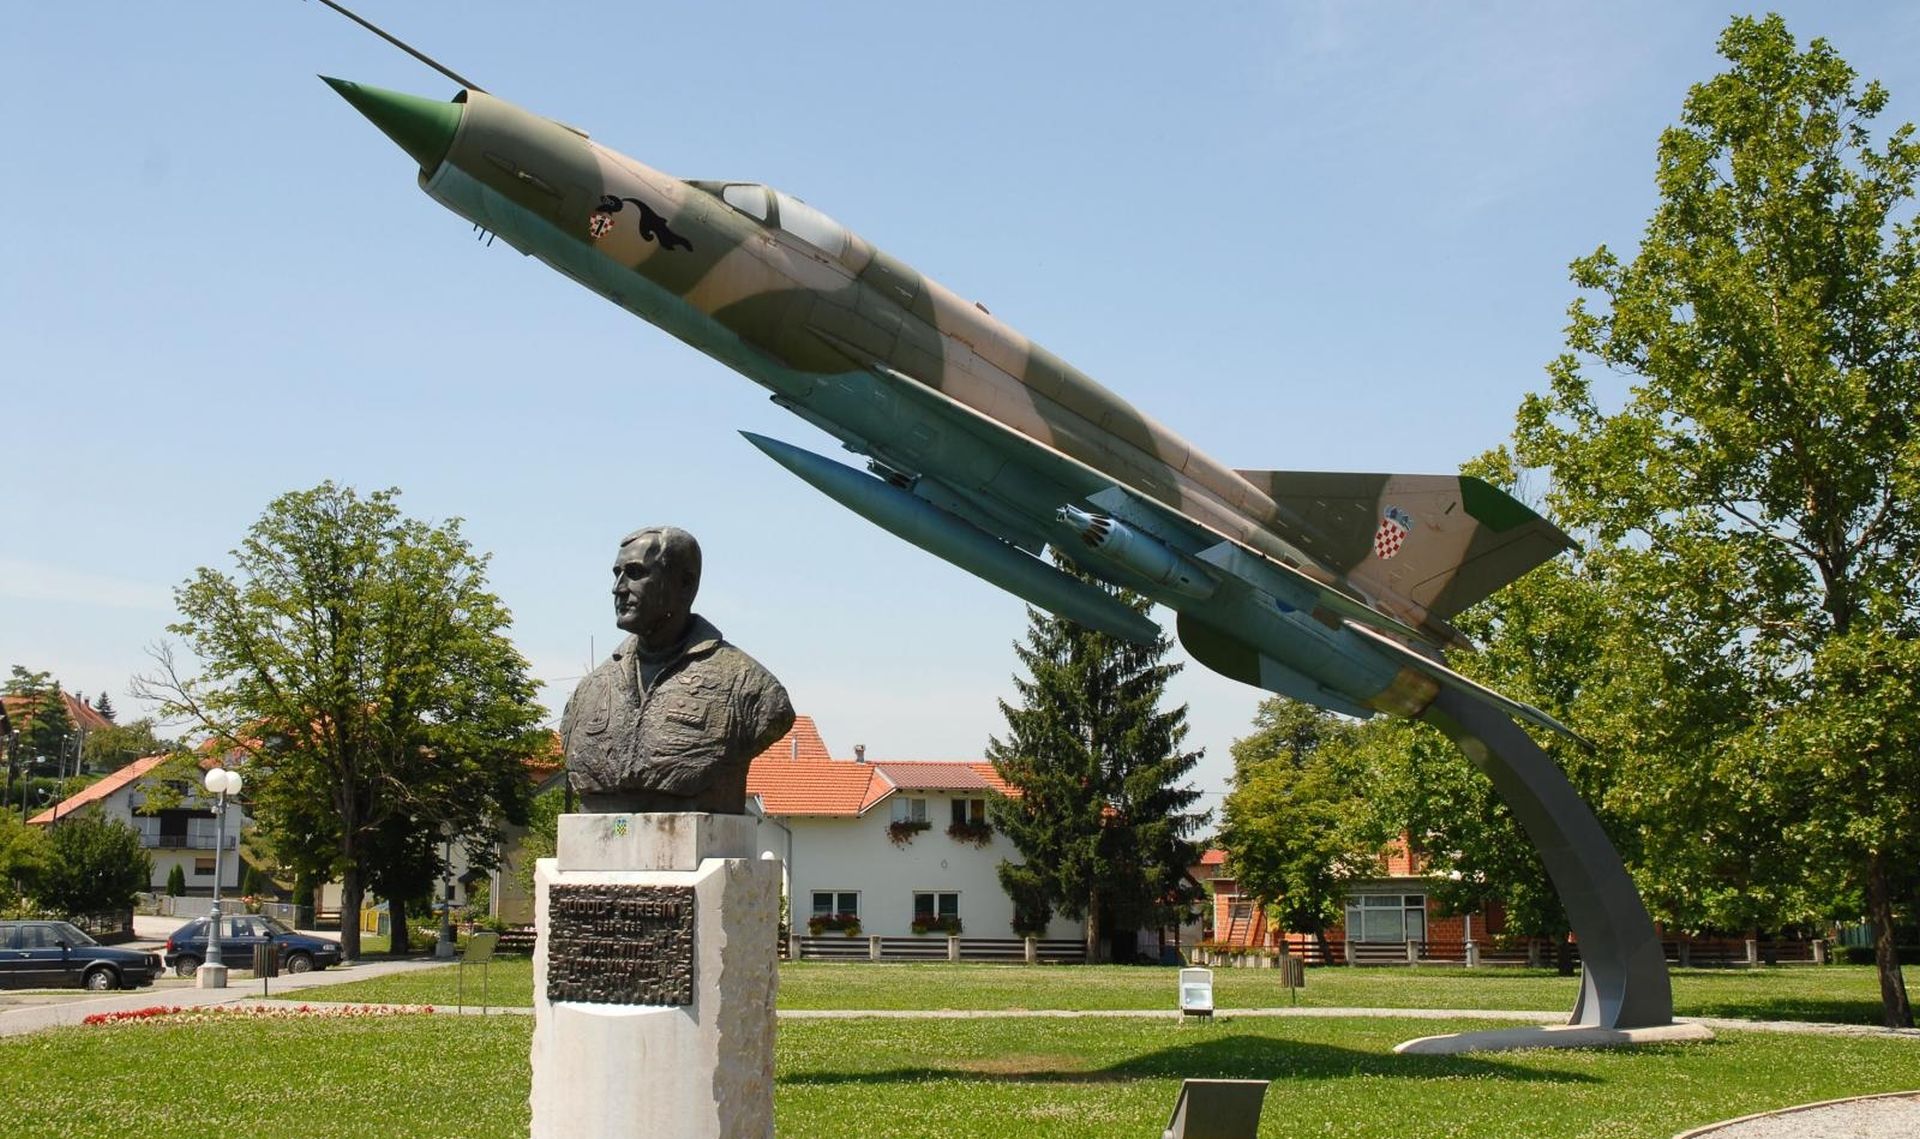 15.07.2009., Gornja Stubica - 24. lipnja 2004. u Gornjoj Stubici je otvoren spomen park "Rudolf Peresin" u kojem se nalazi pilotova statua i konzervirani MiG-21 koji je dosao iz remontnog zavoda u Velikoj Gorici.
Photo: Zeljko Pusec/Vecernji list